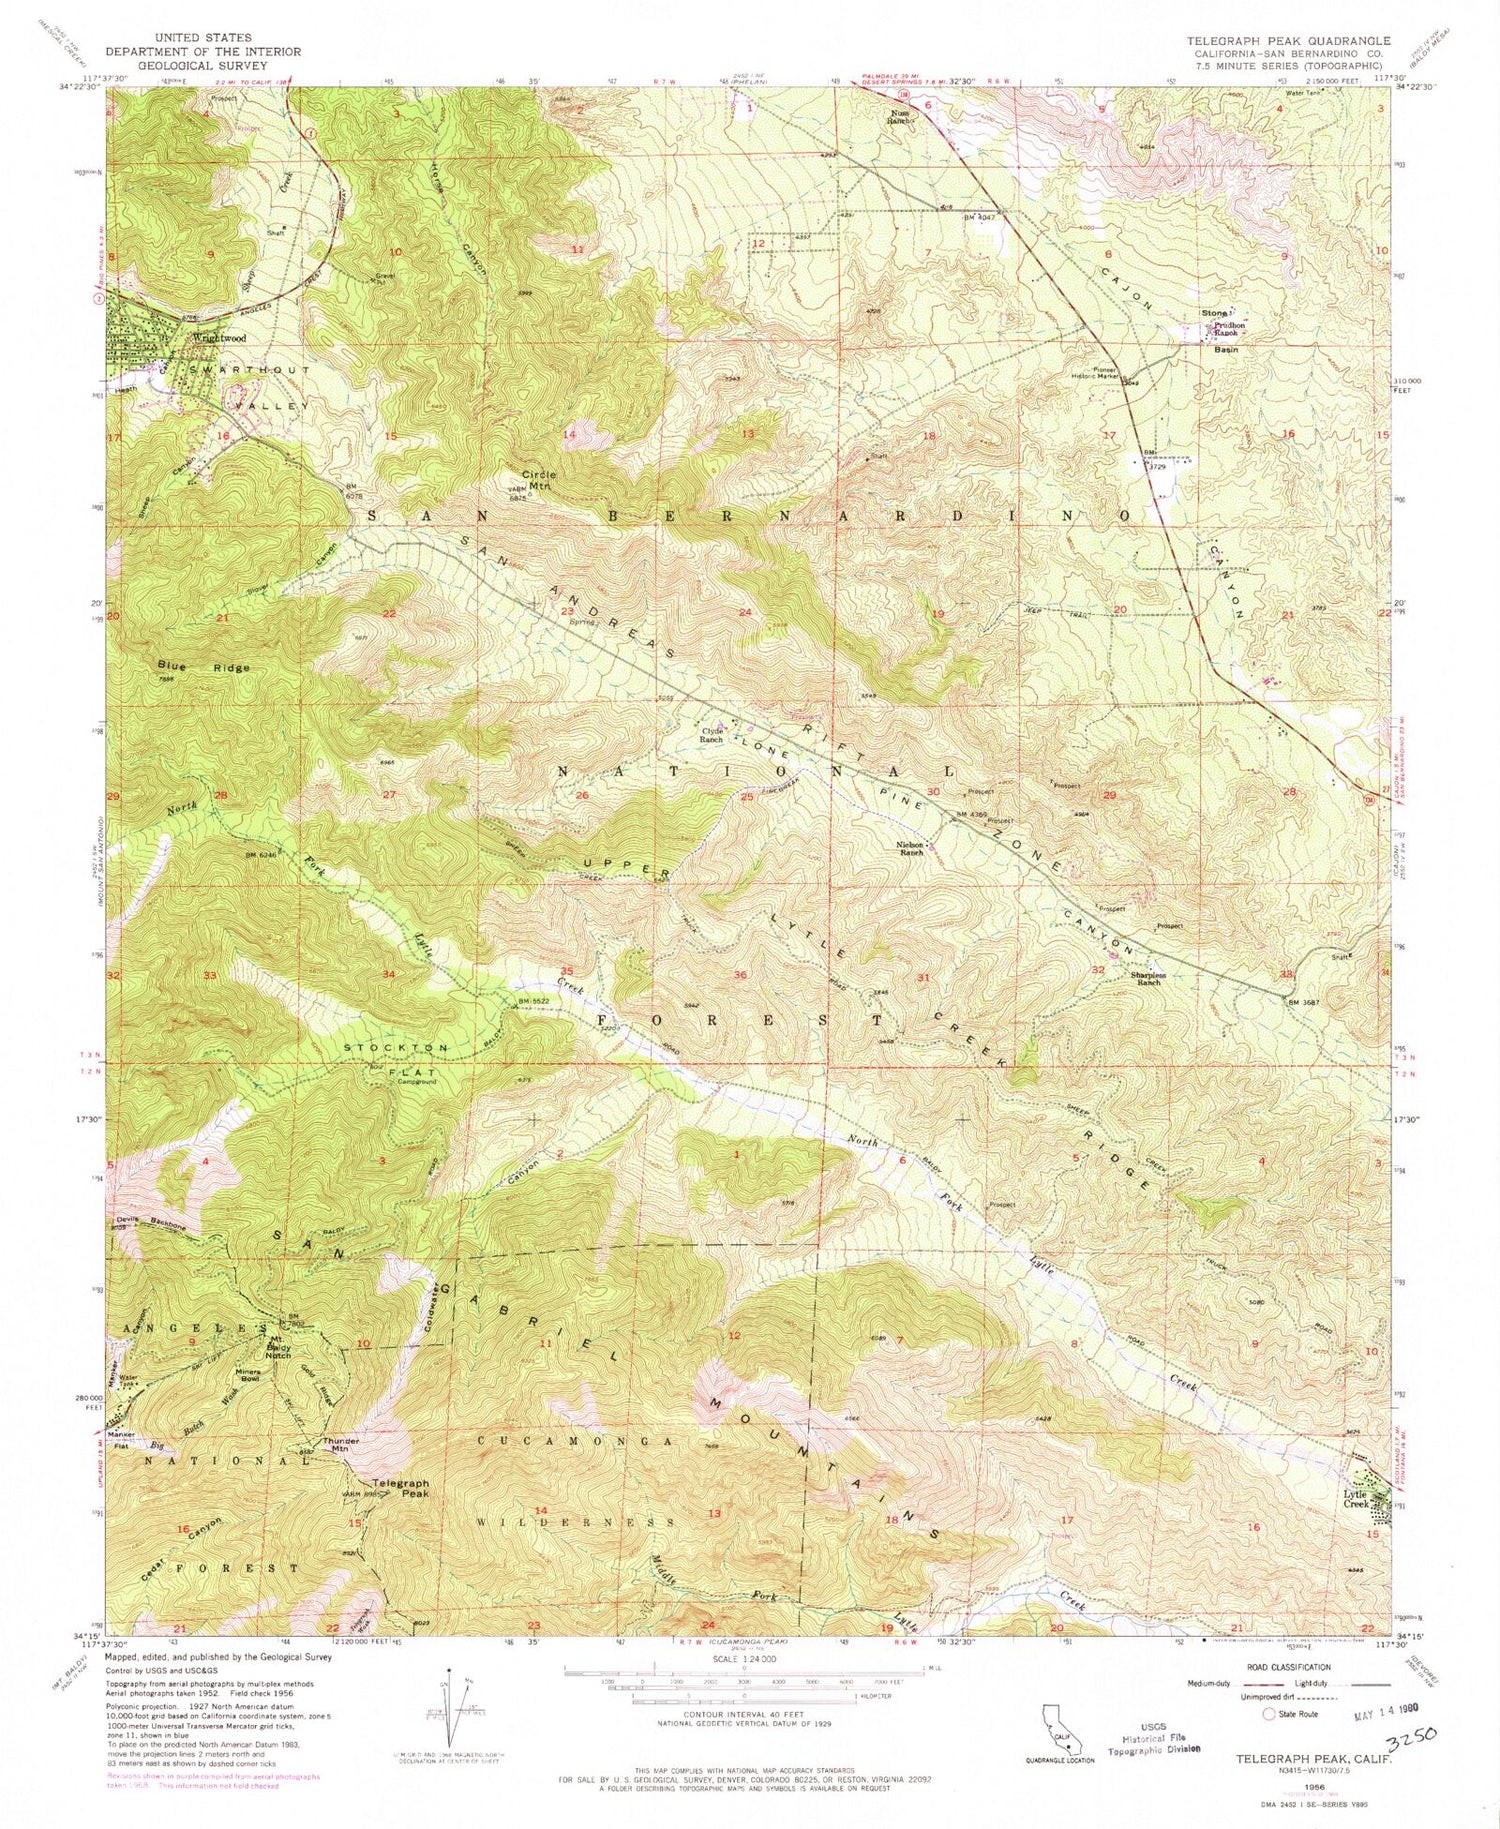 USGS Classic Telegraph Peak California 7.5'x7.5' Topo Map Image